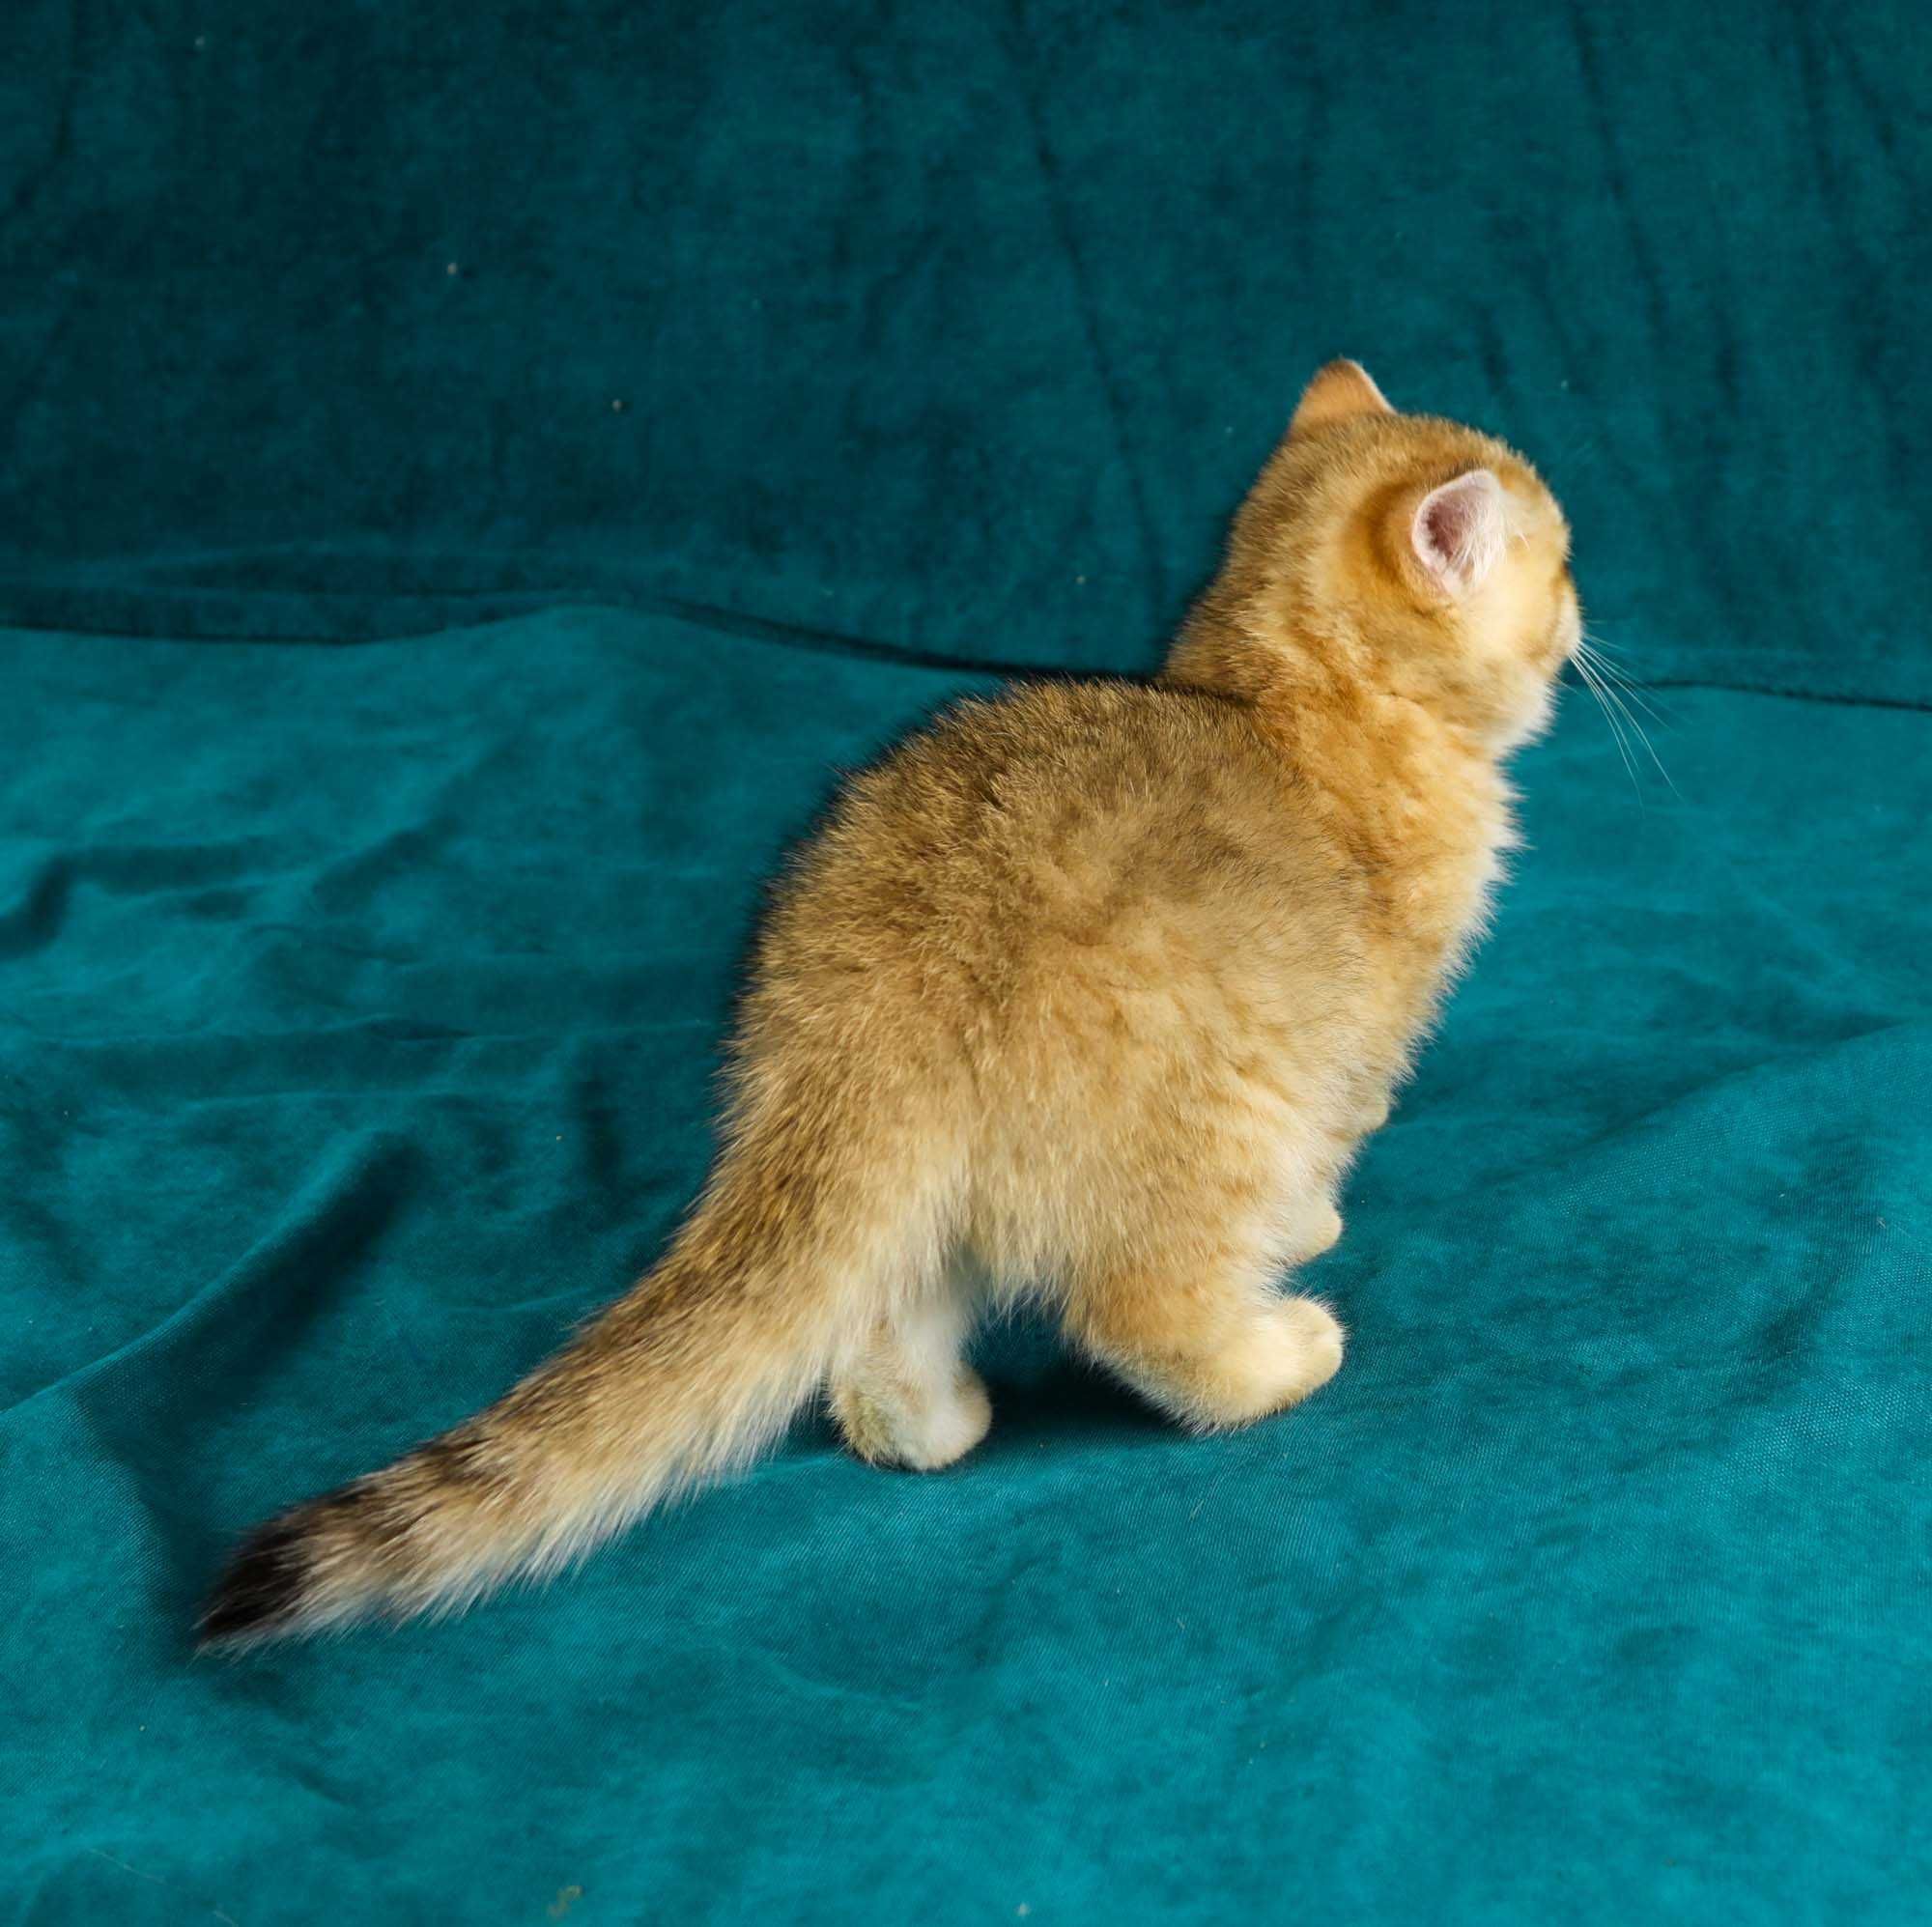 Słodziutka kotka brytyjska złota z rodowodem FPL WOLNA